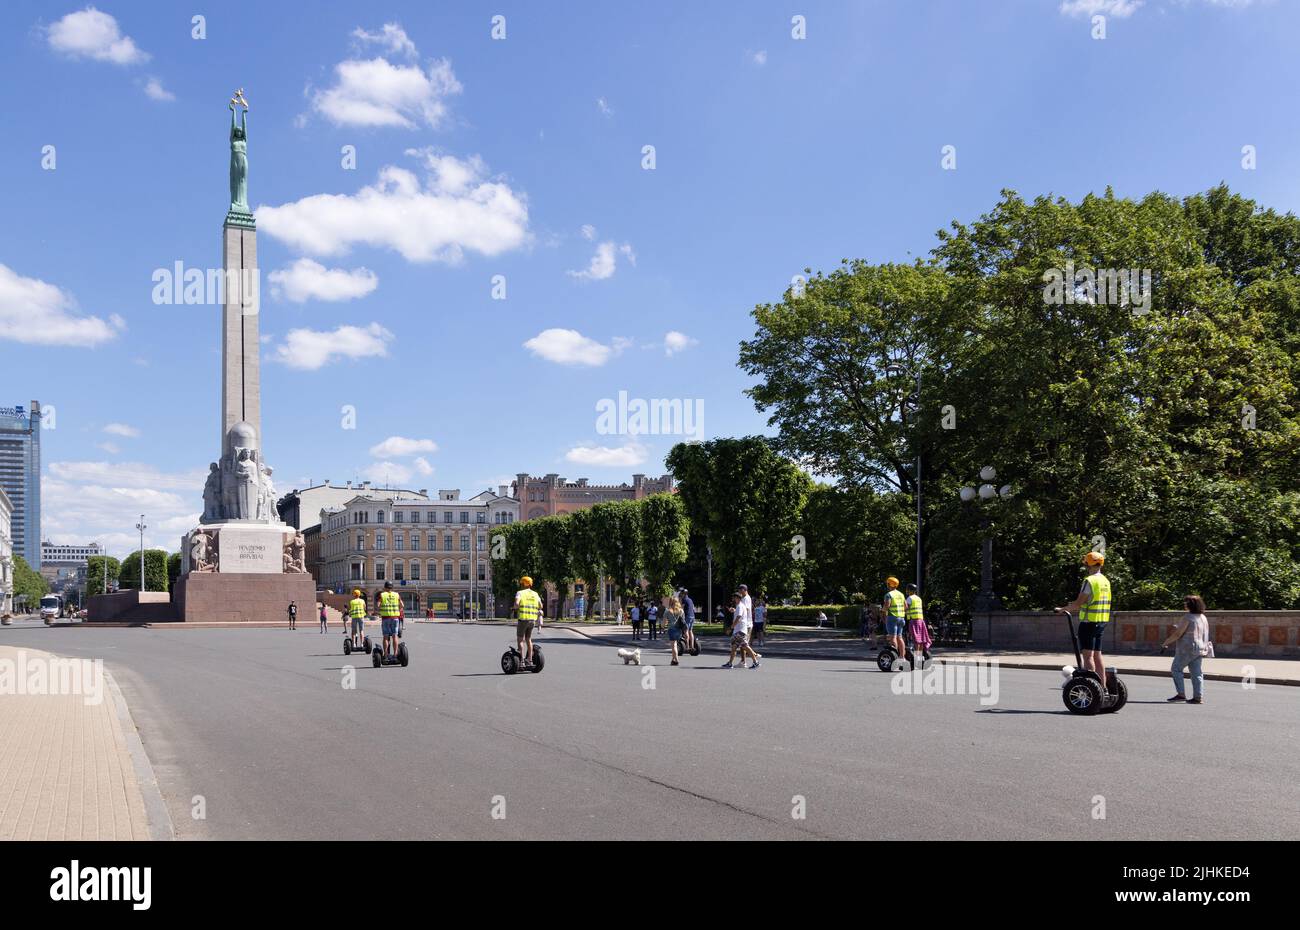 Rigas Tourismus; Touristen auf einer segway-Tour kommen am Freiheitsdenkmal im Stadtzentrum an; Riga, Lettland, Europa; Lettland reisen. Stockfoto